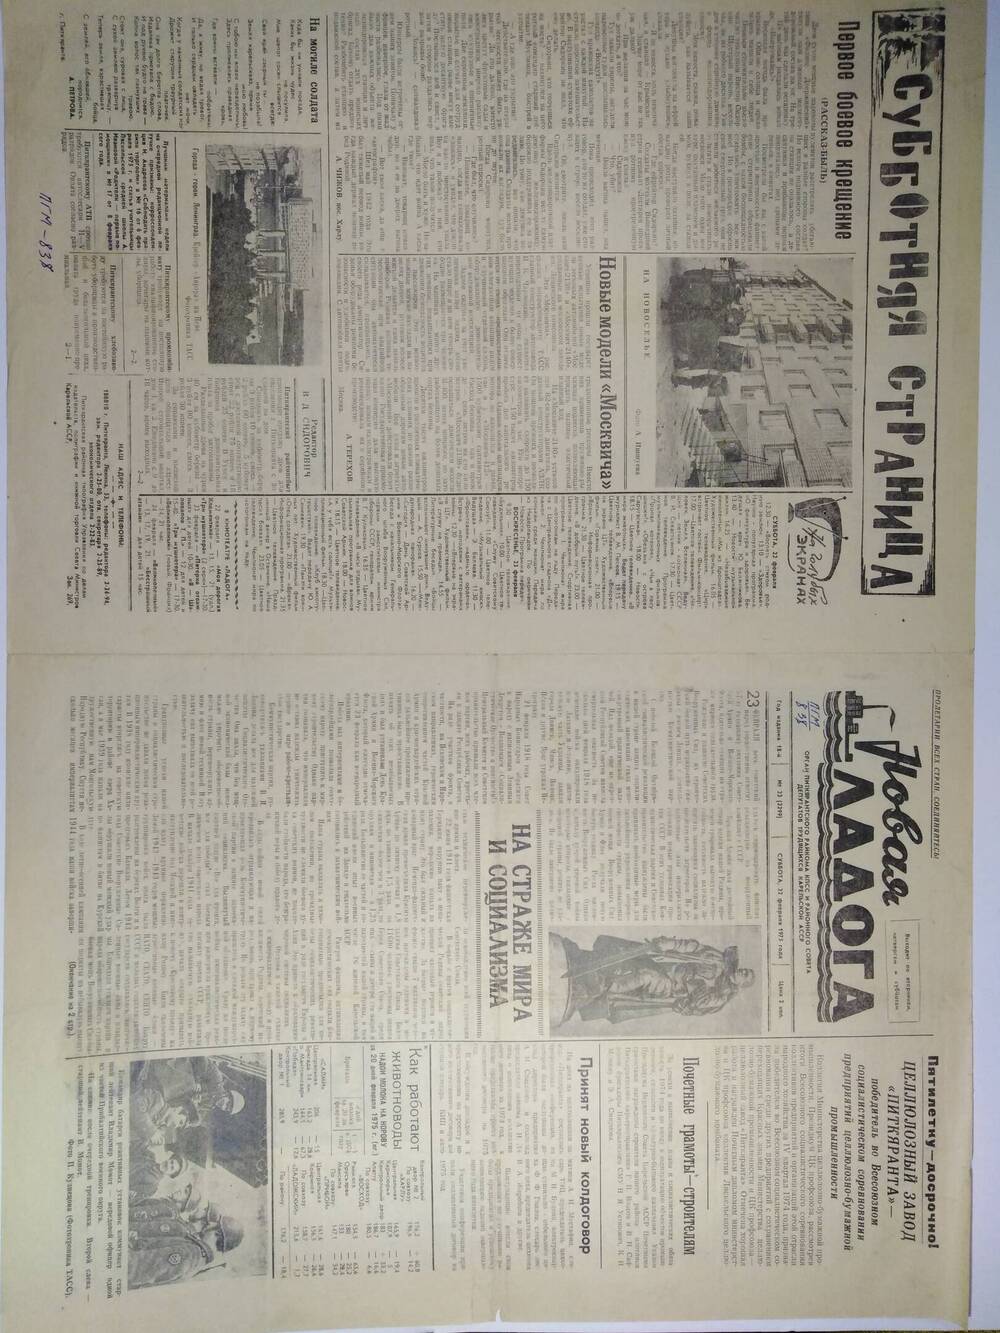 Газета Новая Ладога №23 (2299) от 22.02.1975 г.